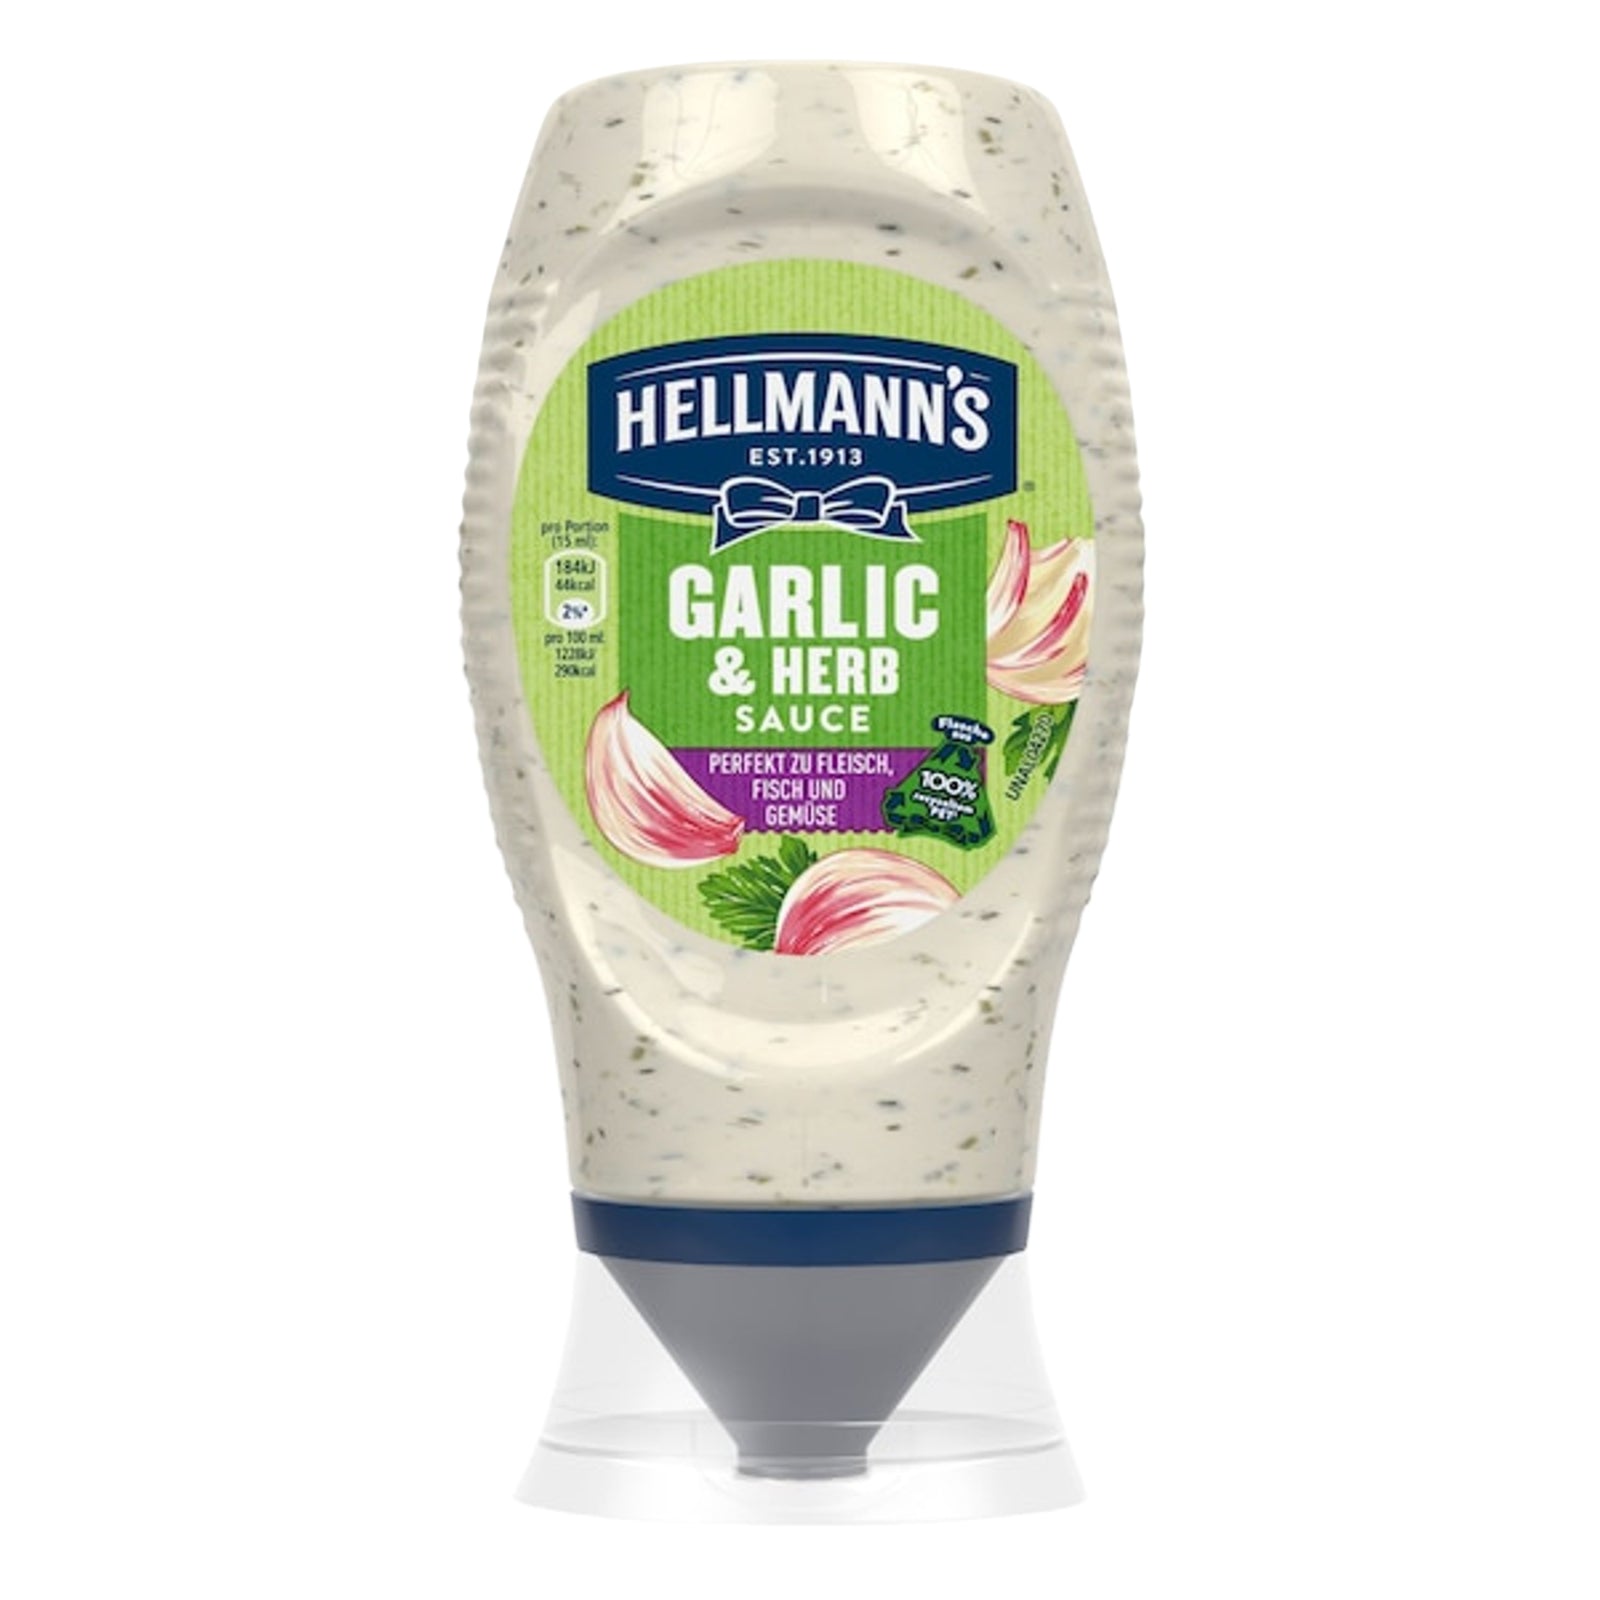 Hellmann's Garlic & Herb Sauce leckere Grillsauce perfekt zu Fleisch, Fisch und Gemüse 250ml